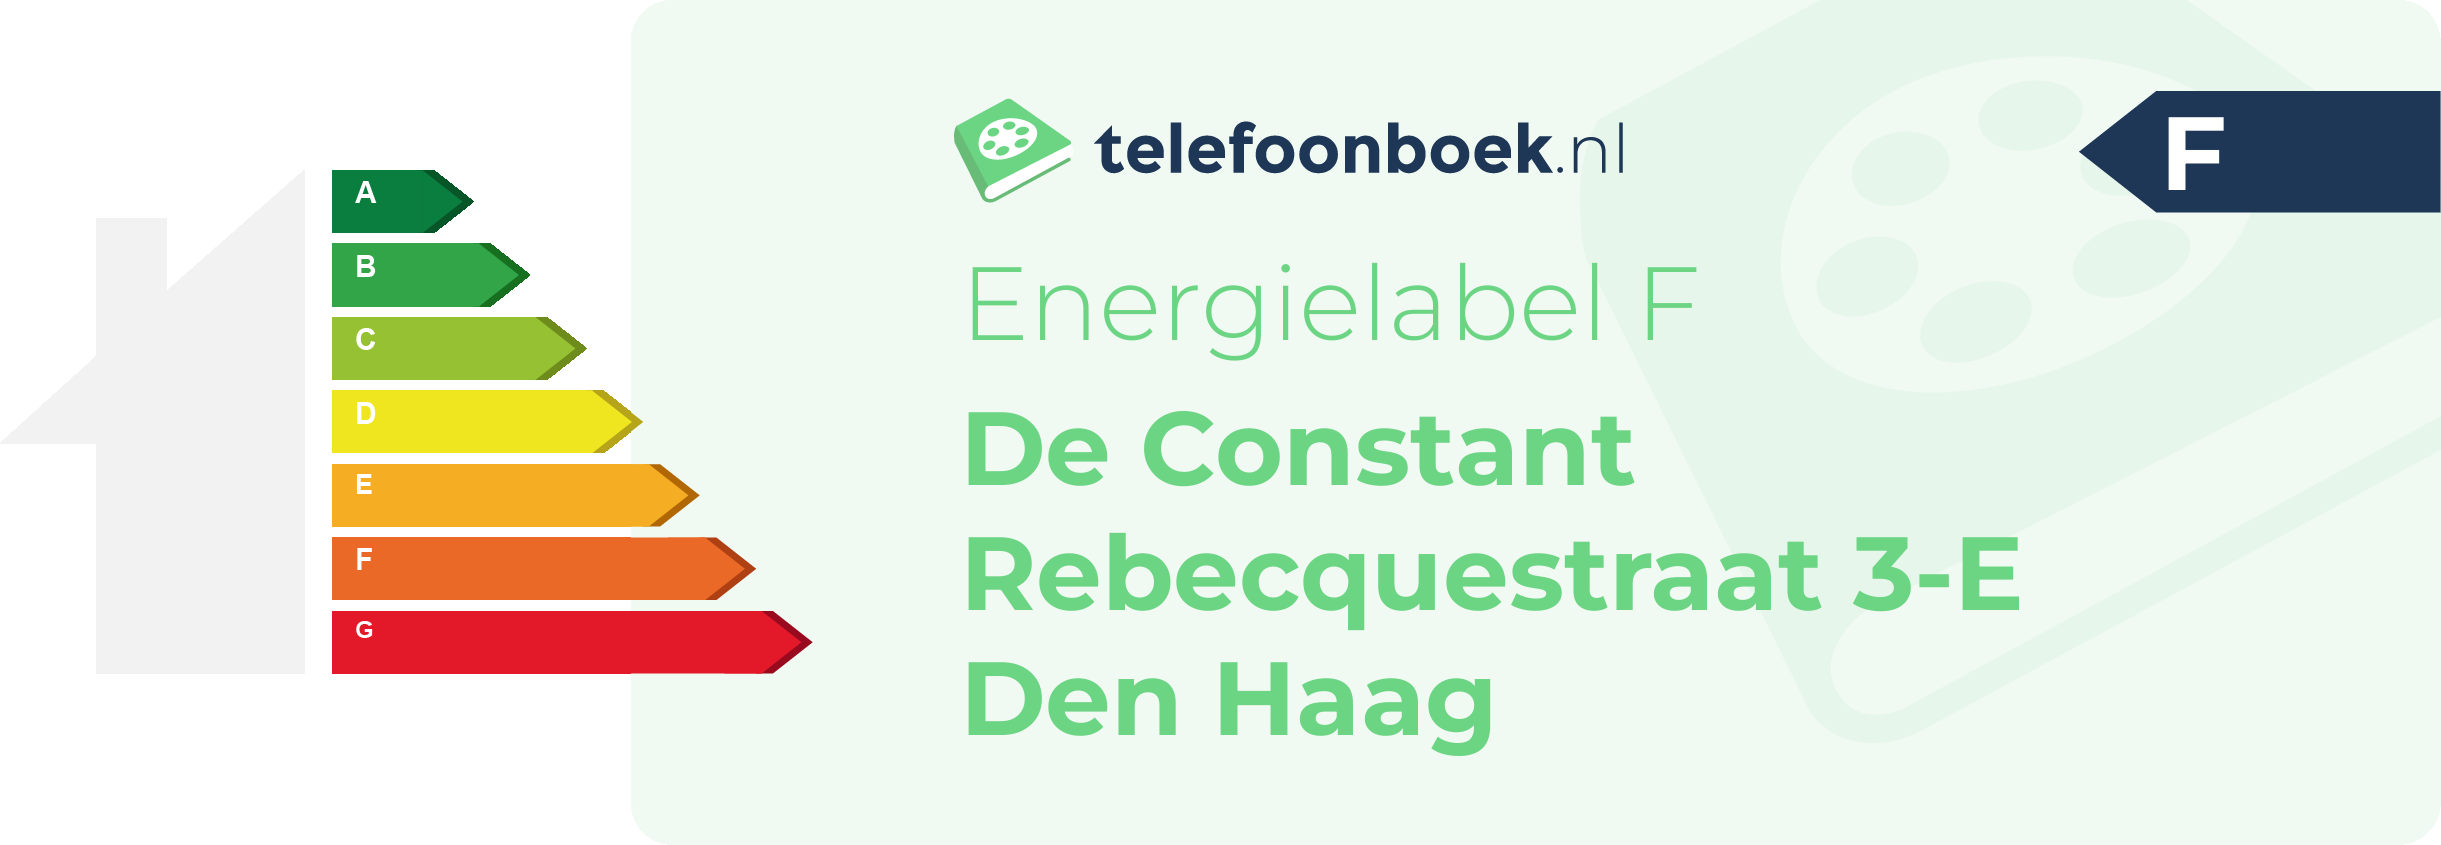 Energielabel De Constant Rebecquestraat 3-E Den Haag